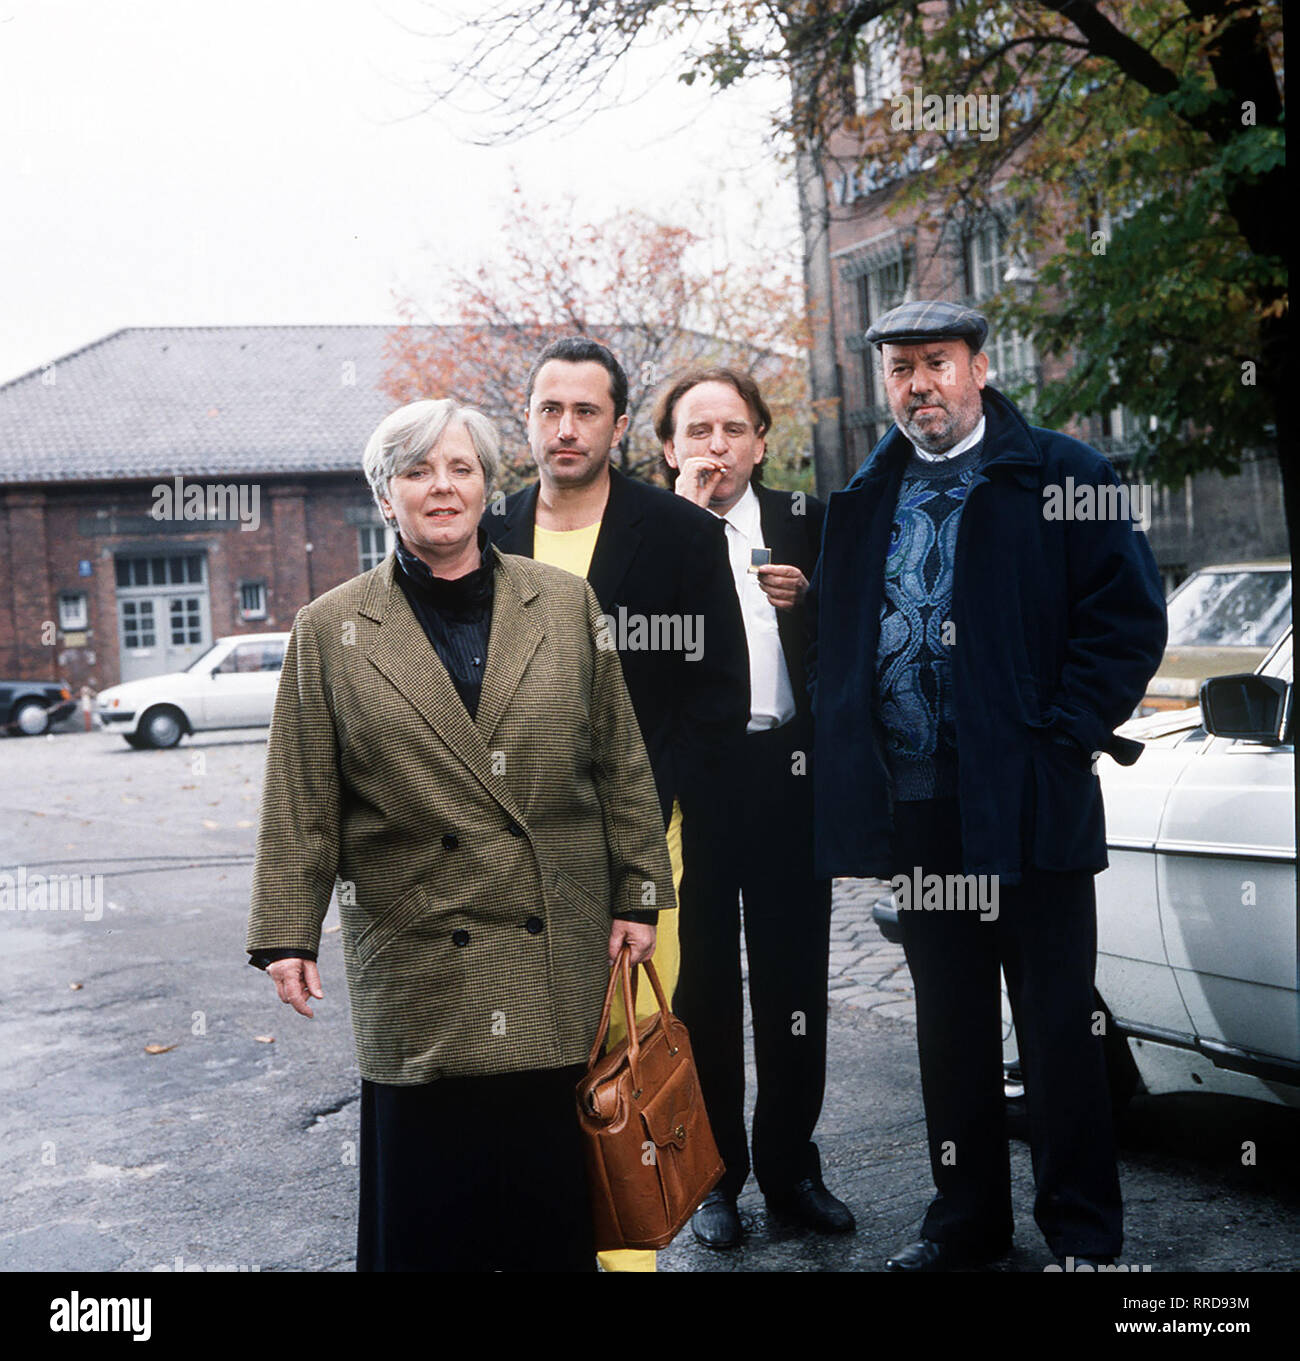 Folge: Der Ring Damit ihr Bub, der Hanse (ROBERT GIGGENBACH, 2.v.l.), nicht ins Gefängnis muß, verkauft die Paula (RUTH DREXEL, l.) ihren Kiosk in der Großmarkthalle. Szene mit Nagel (ALFRED EDEL, 2.v.r.) und Kometen-Sepp (TONI BERGER). Regie: Franz Xaver Bogner 'Der Ring' 1 / Überschrift: ZUR FREIHEIT / BRD 1987 Stock Photo